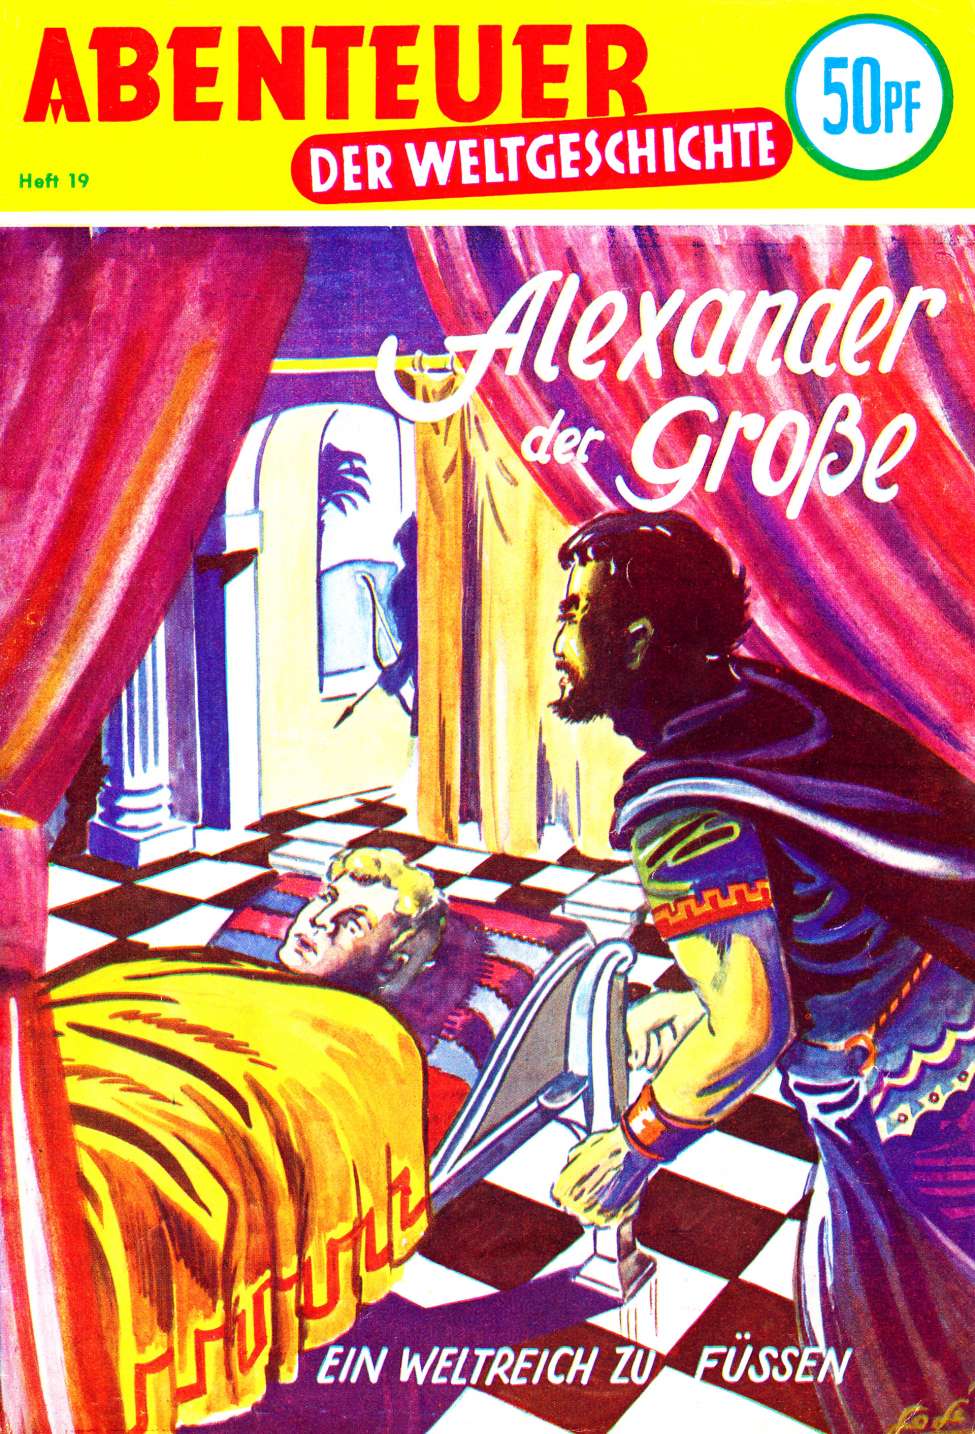 Book Cover For Abenteuer der Weltgeschichte 19 - Alexander der Grosse